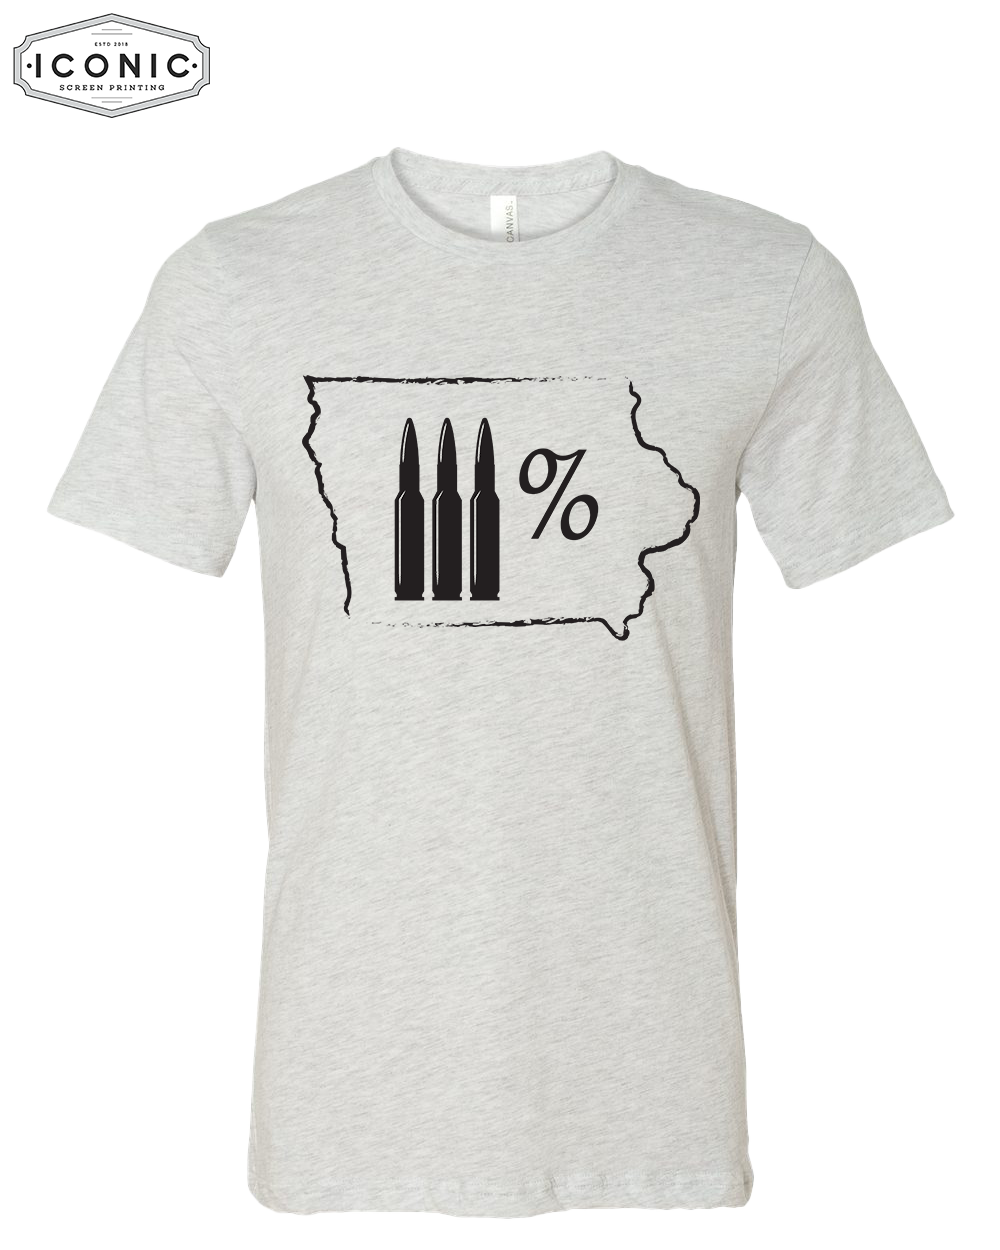 3% Iowa  - Unisex Jersey Tee